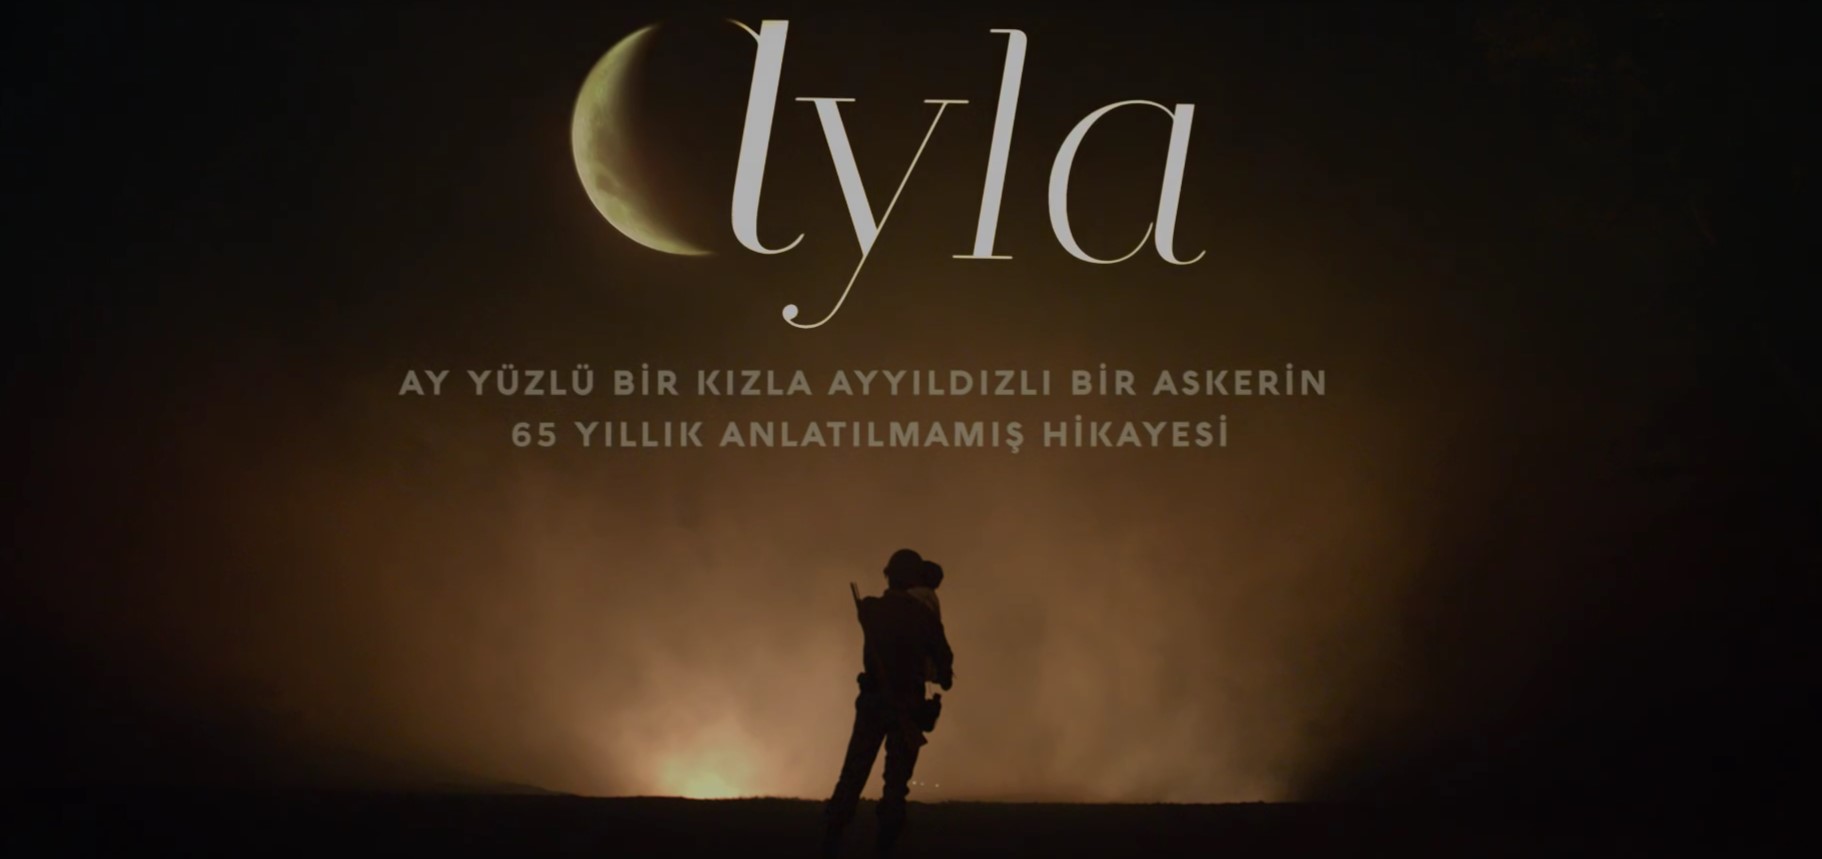 Türkiye’nin Oscar adayı Ayla filmi oldu